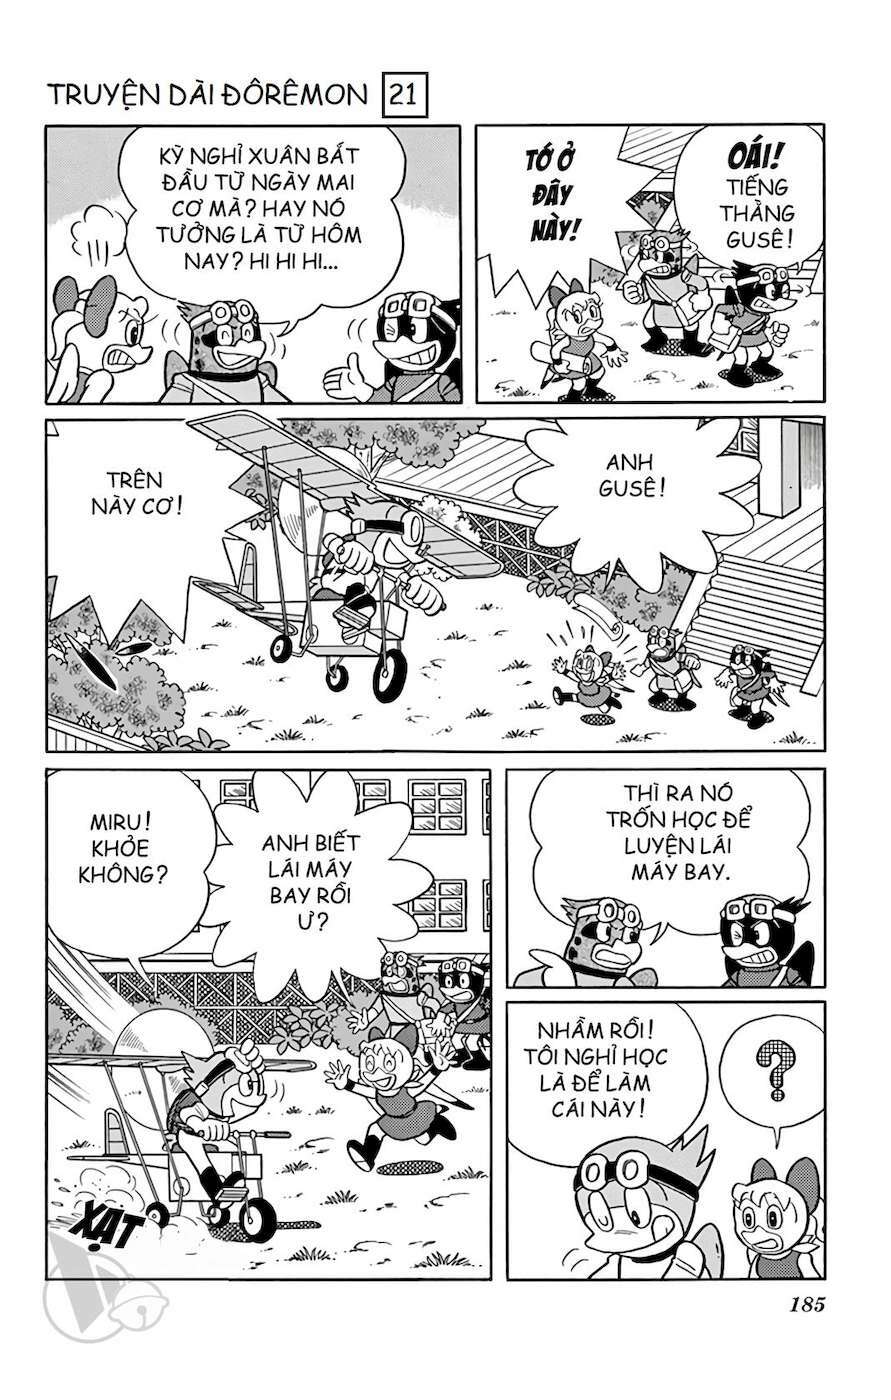 Truyện Tranh Doraemon: Du Hành Đến Vương Quốc Loài Chim trang 184